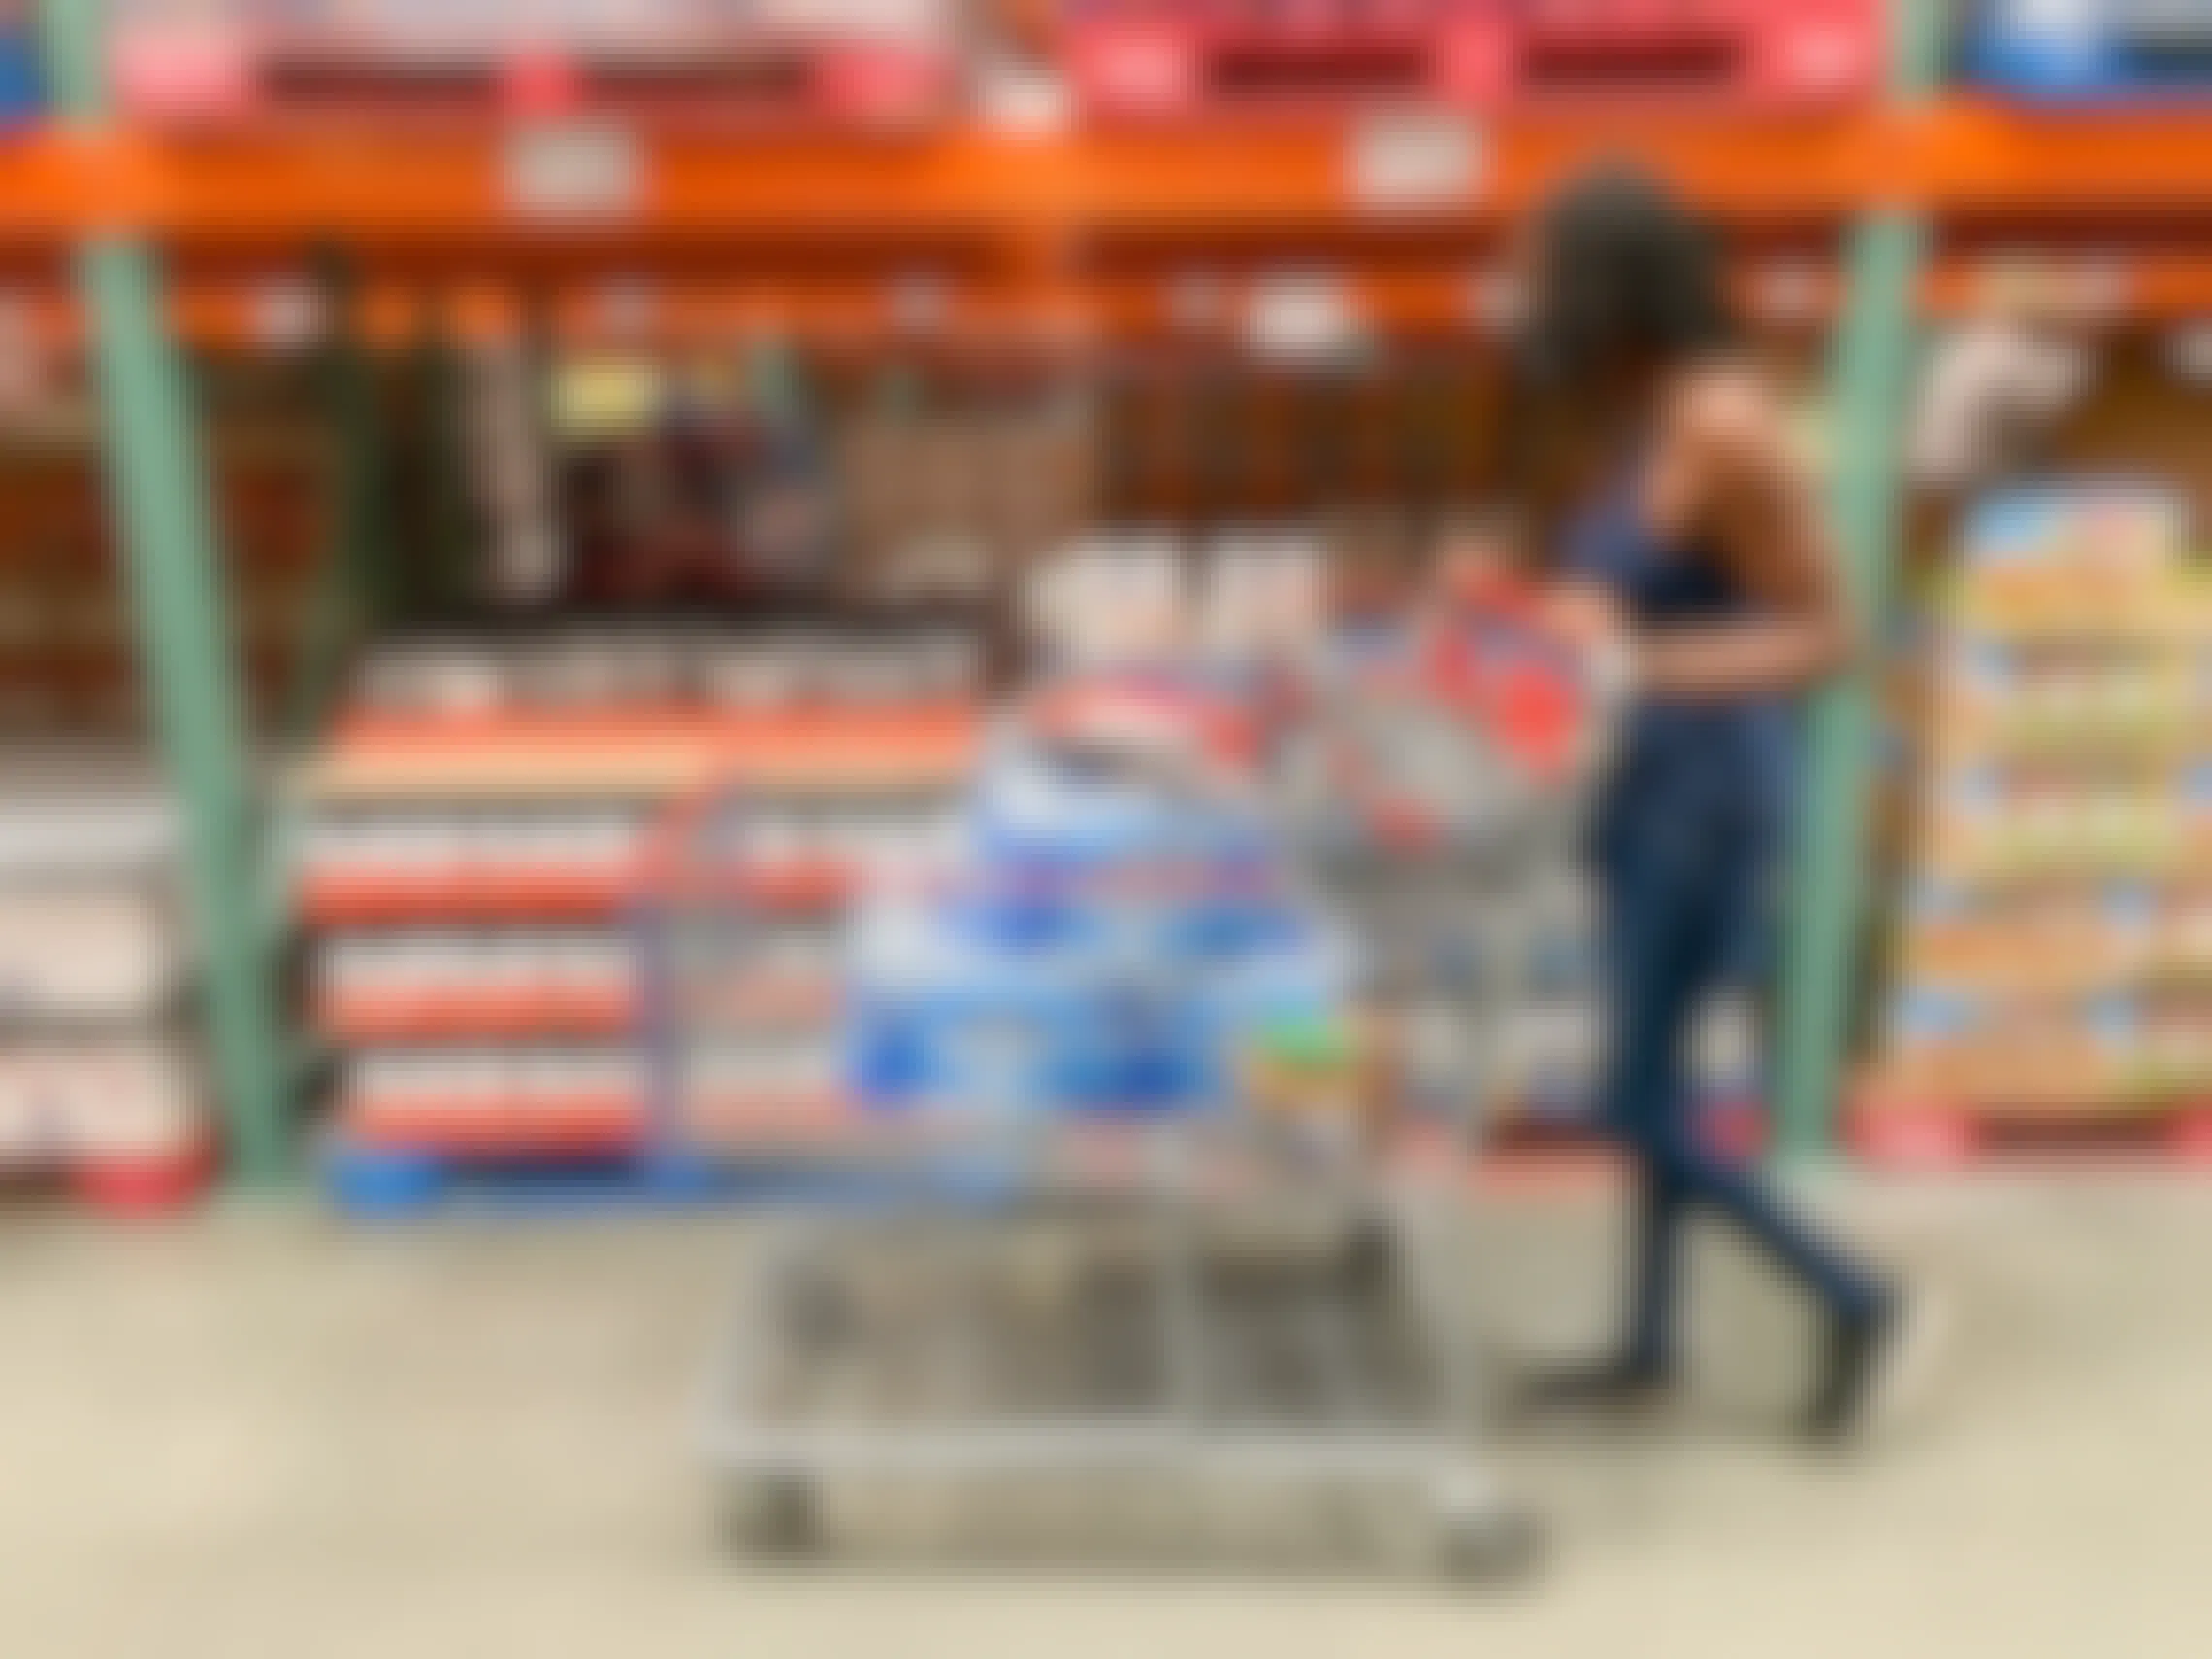 A woman pushing a shopping cart in Costco